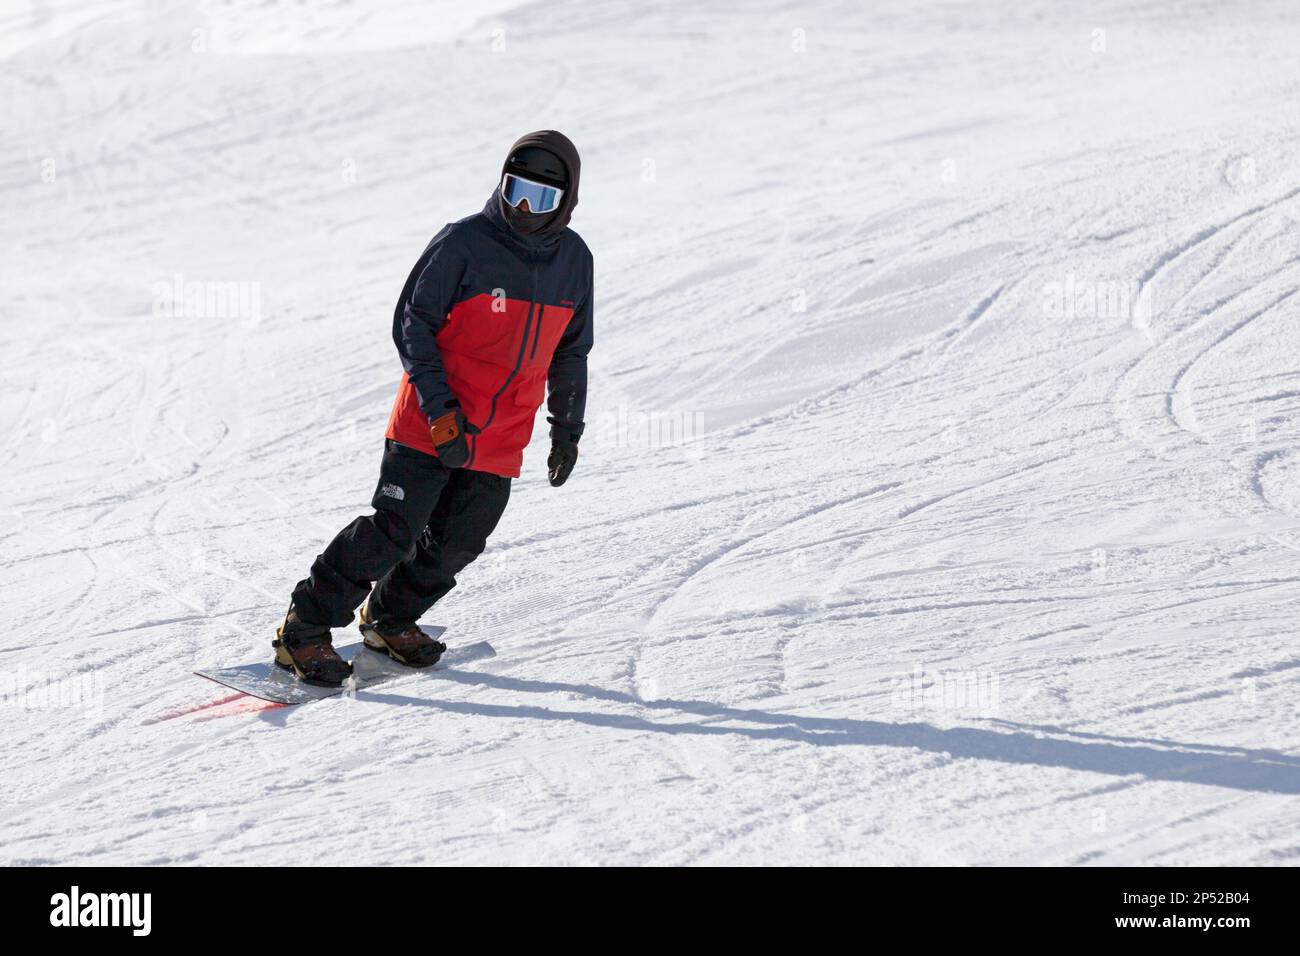 Pas de la Casa, Andorra, Dezember 02 2019: Ein Snowboarder auf der Skipiste von Grandvalira, dem größten Skigebiet in den Pyrenäen und Südeuropa. Stockfoto